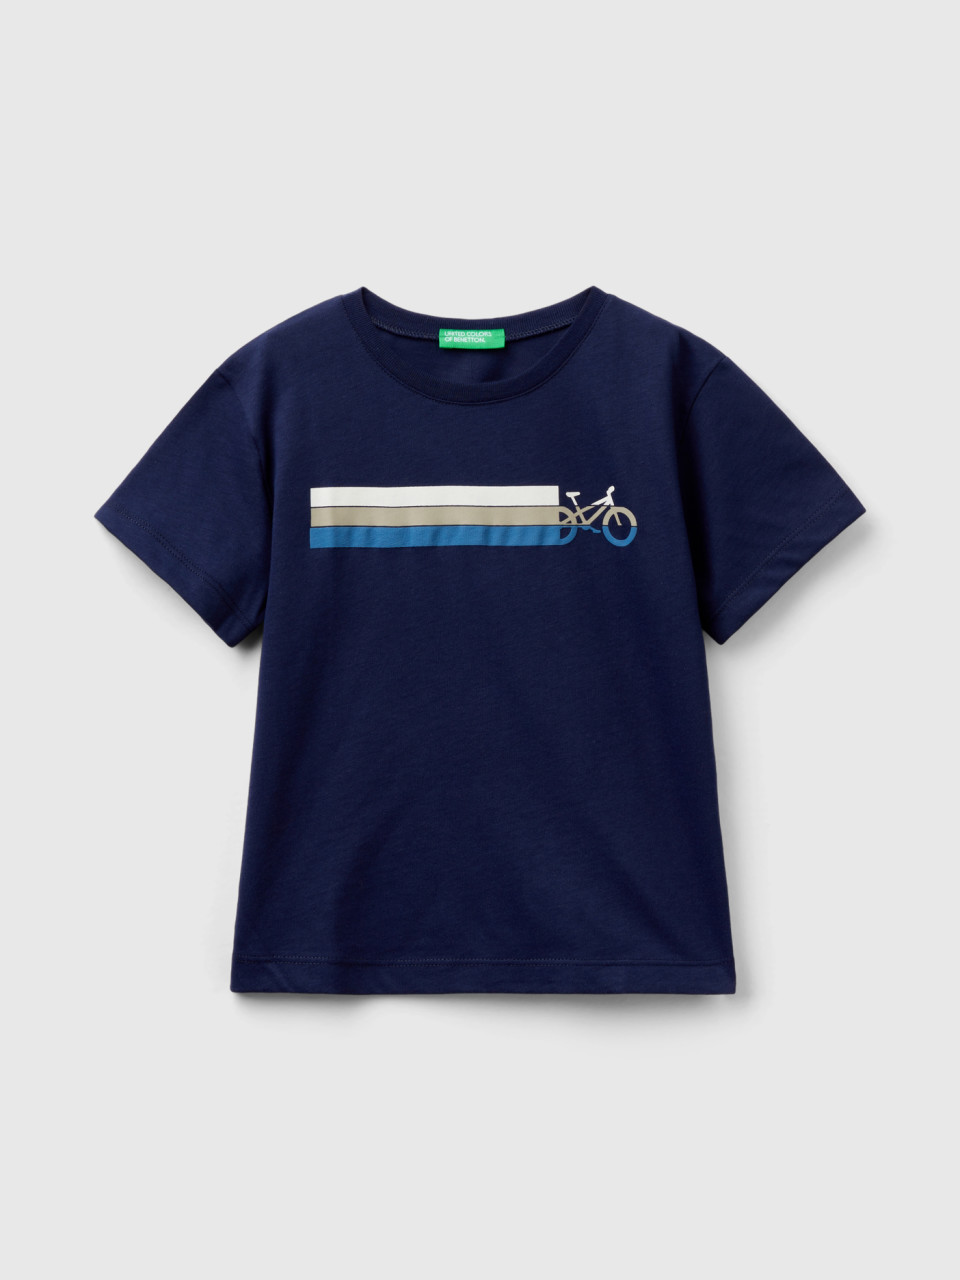 Benetton, Camiseta De Algodón Orgánico Con Estampado, Azul Oscuro, Niños